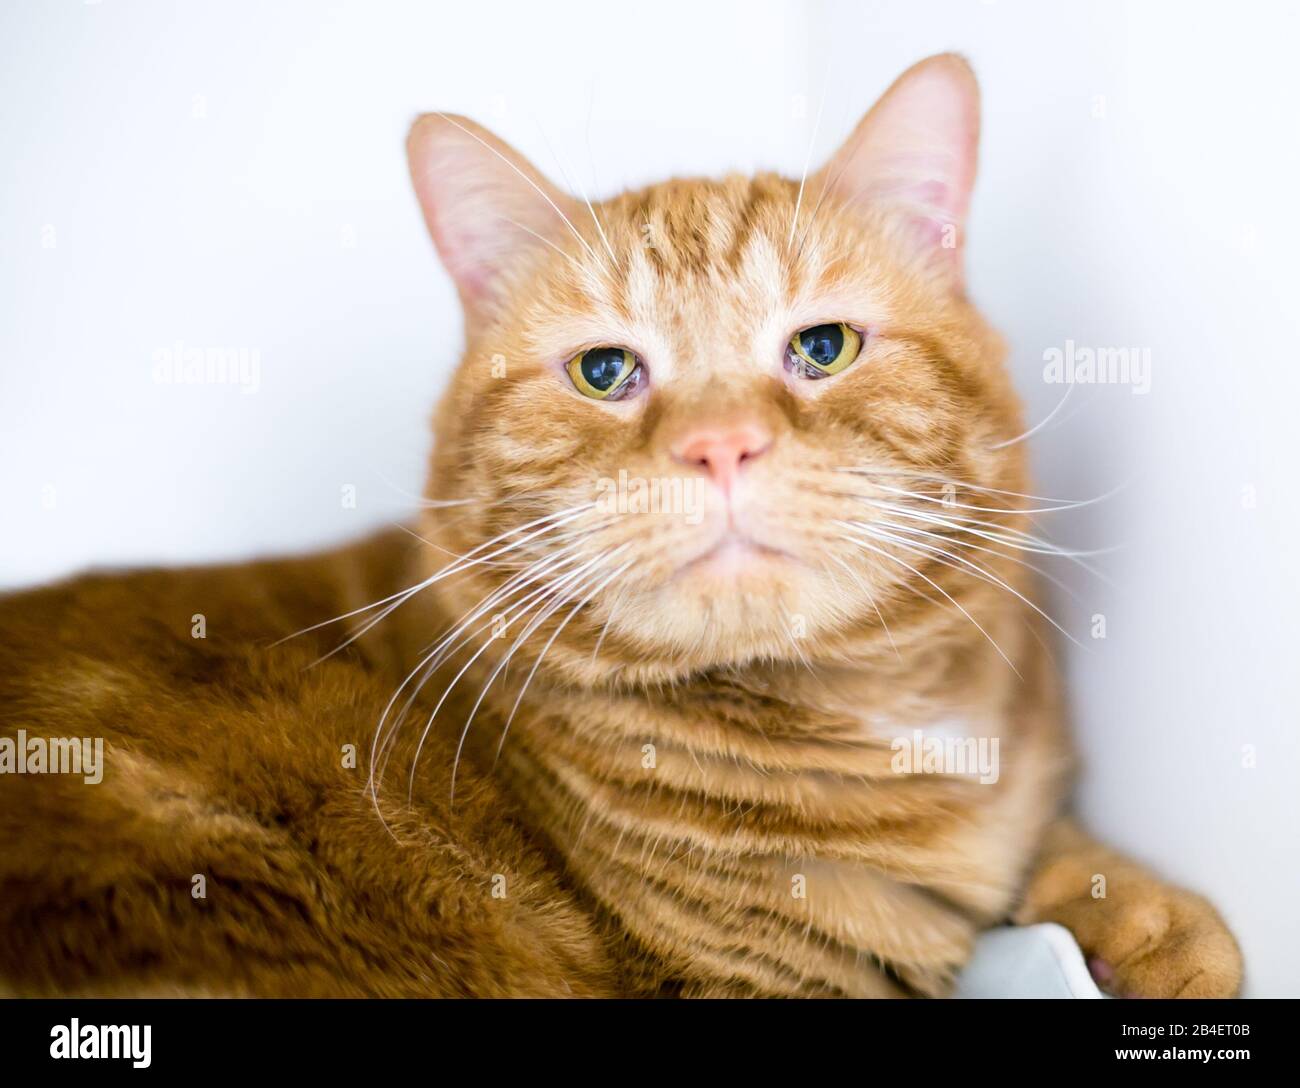 Un gato de shortair doméstico tabby naranja con síndrome de Haw, donde el tercer párpado cubre parte del ojo Foto de stock